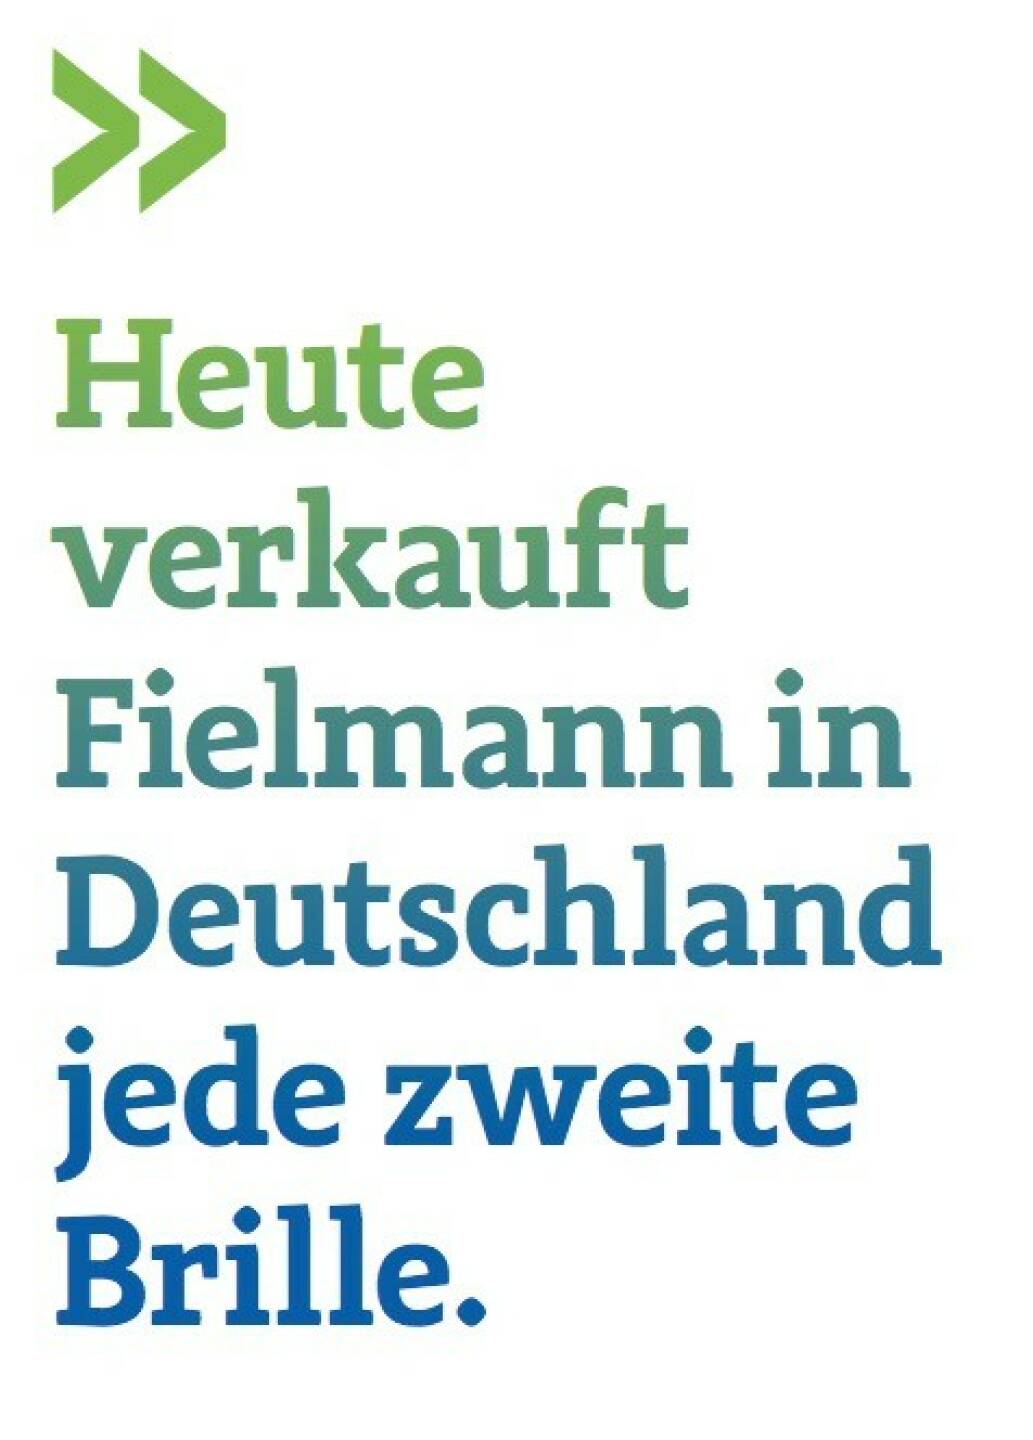 Heute verkauft Fielmann in Deutschland jede zweite Brille. (Ulrich Brockmann, Fielmann, Leiter Investor Relations)